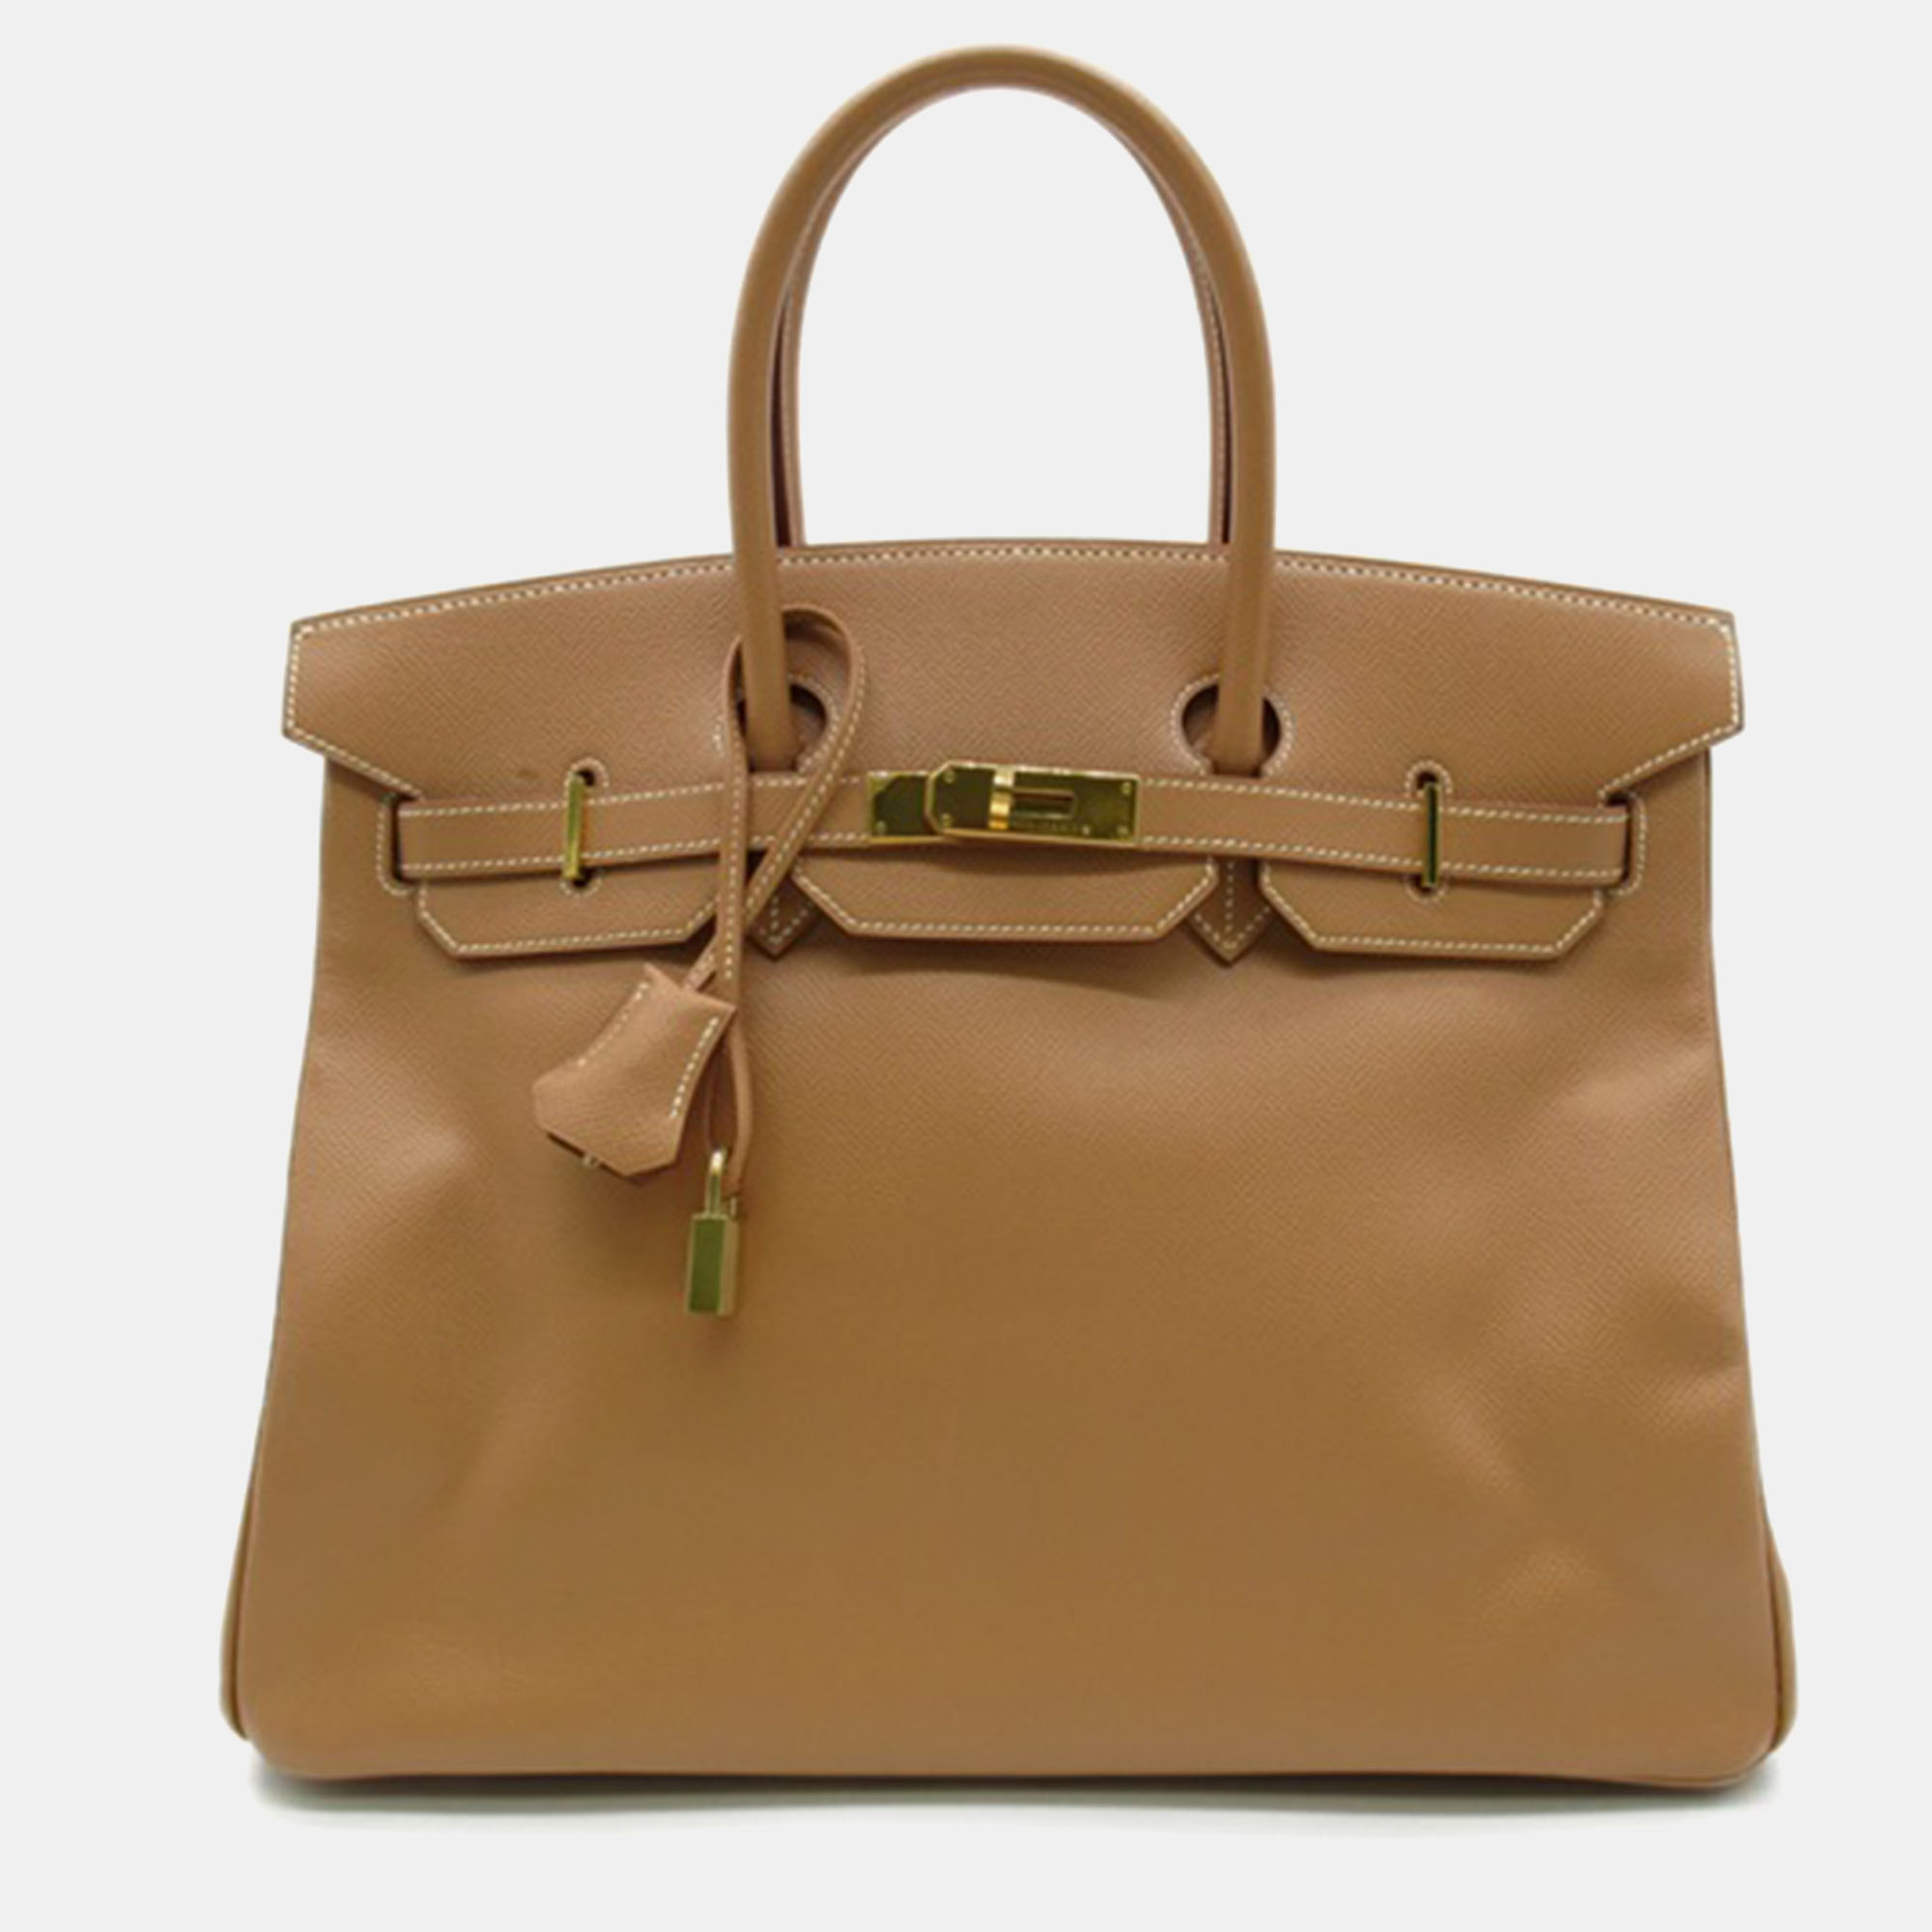 Pre-owned Hermes Brown Leather Togo Birkin 35 Handbag